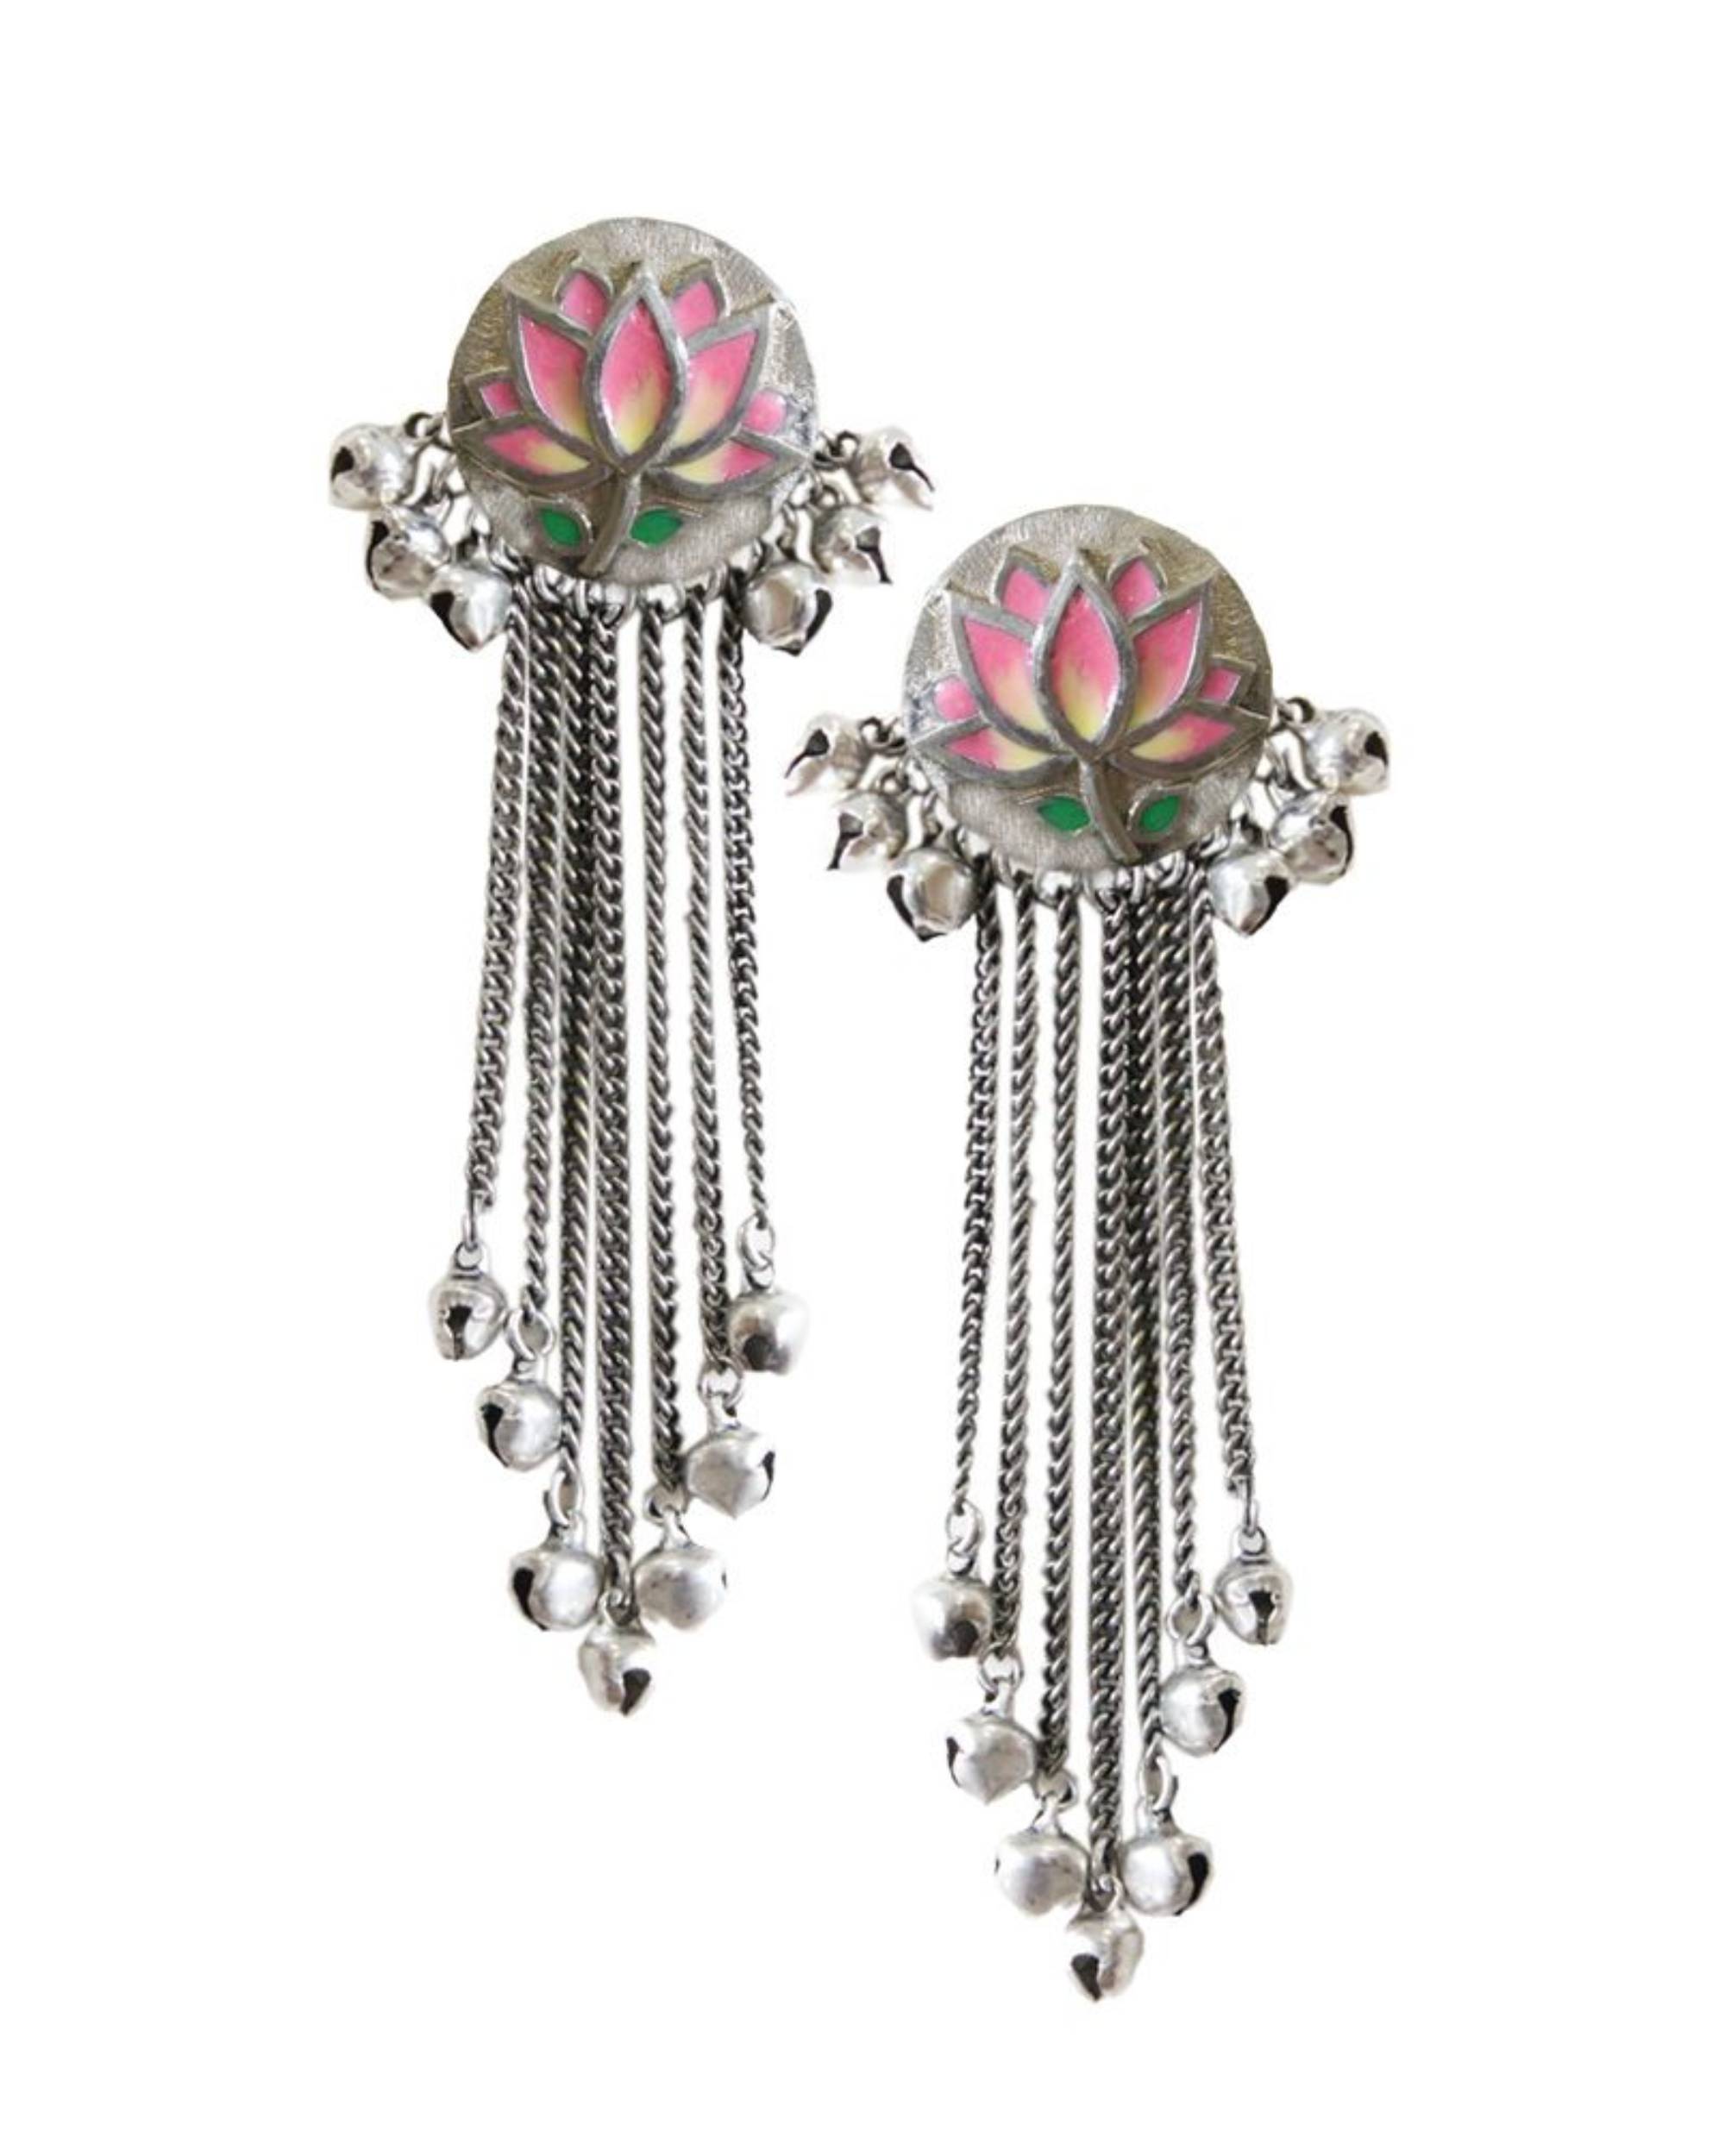 Pink enamel lotus earrings with tassels